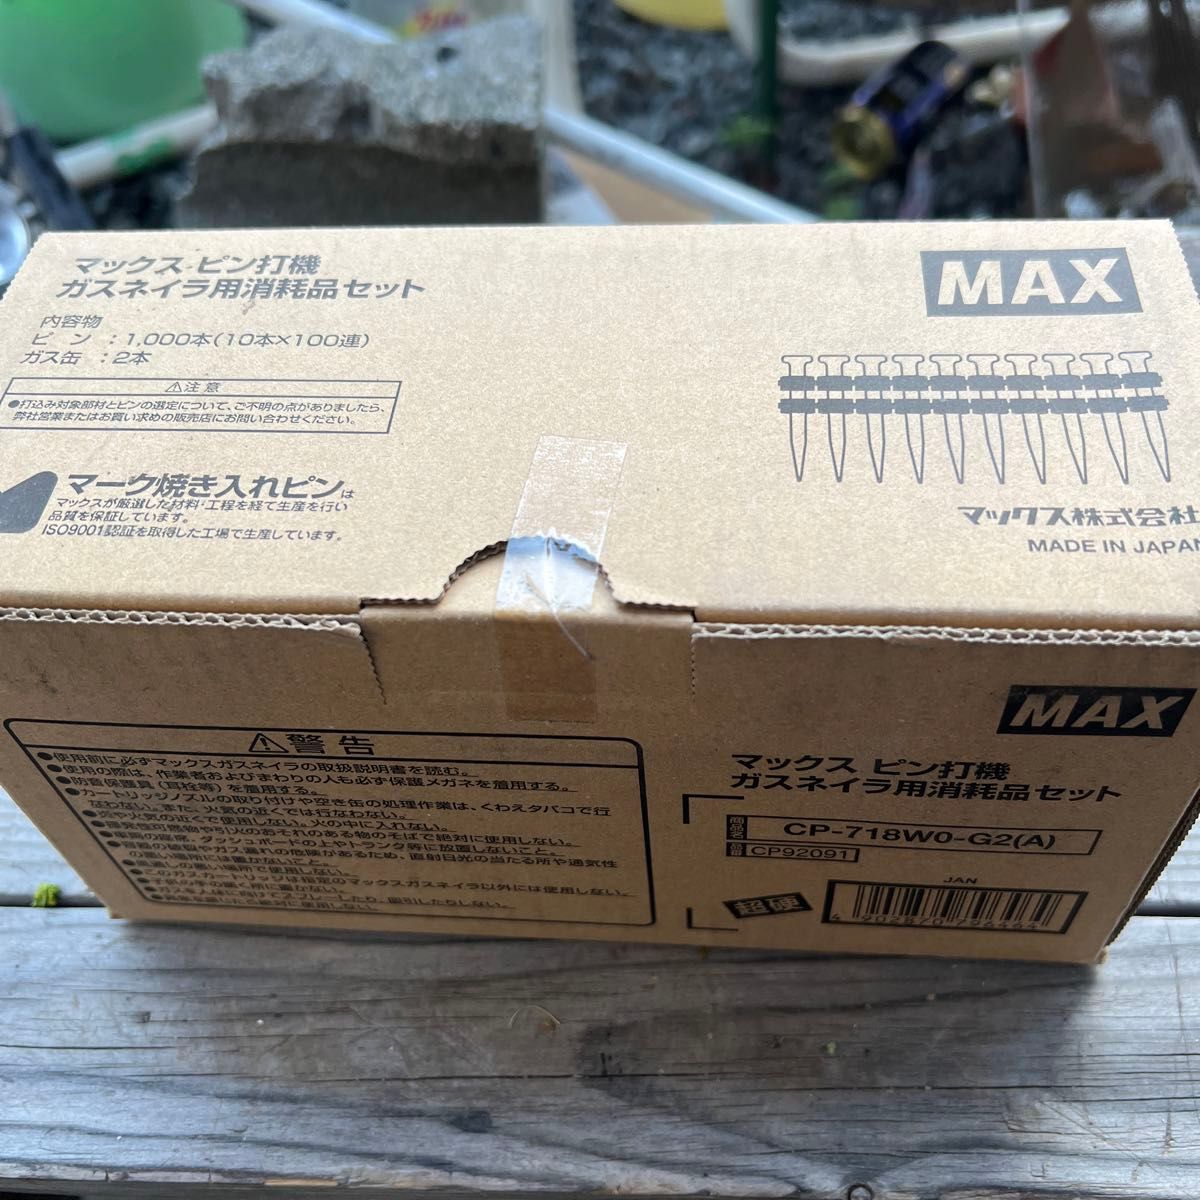 MAX (マックス) ガスネイラ用超硬ピン 長さ18mm 1000本入り GS-725Cシリ CP718W0G2A